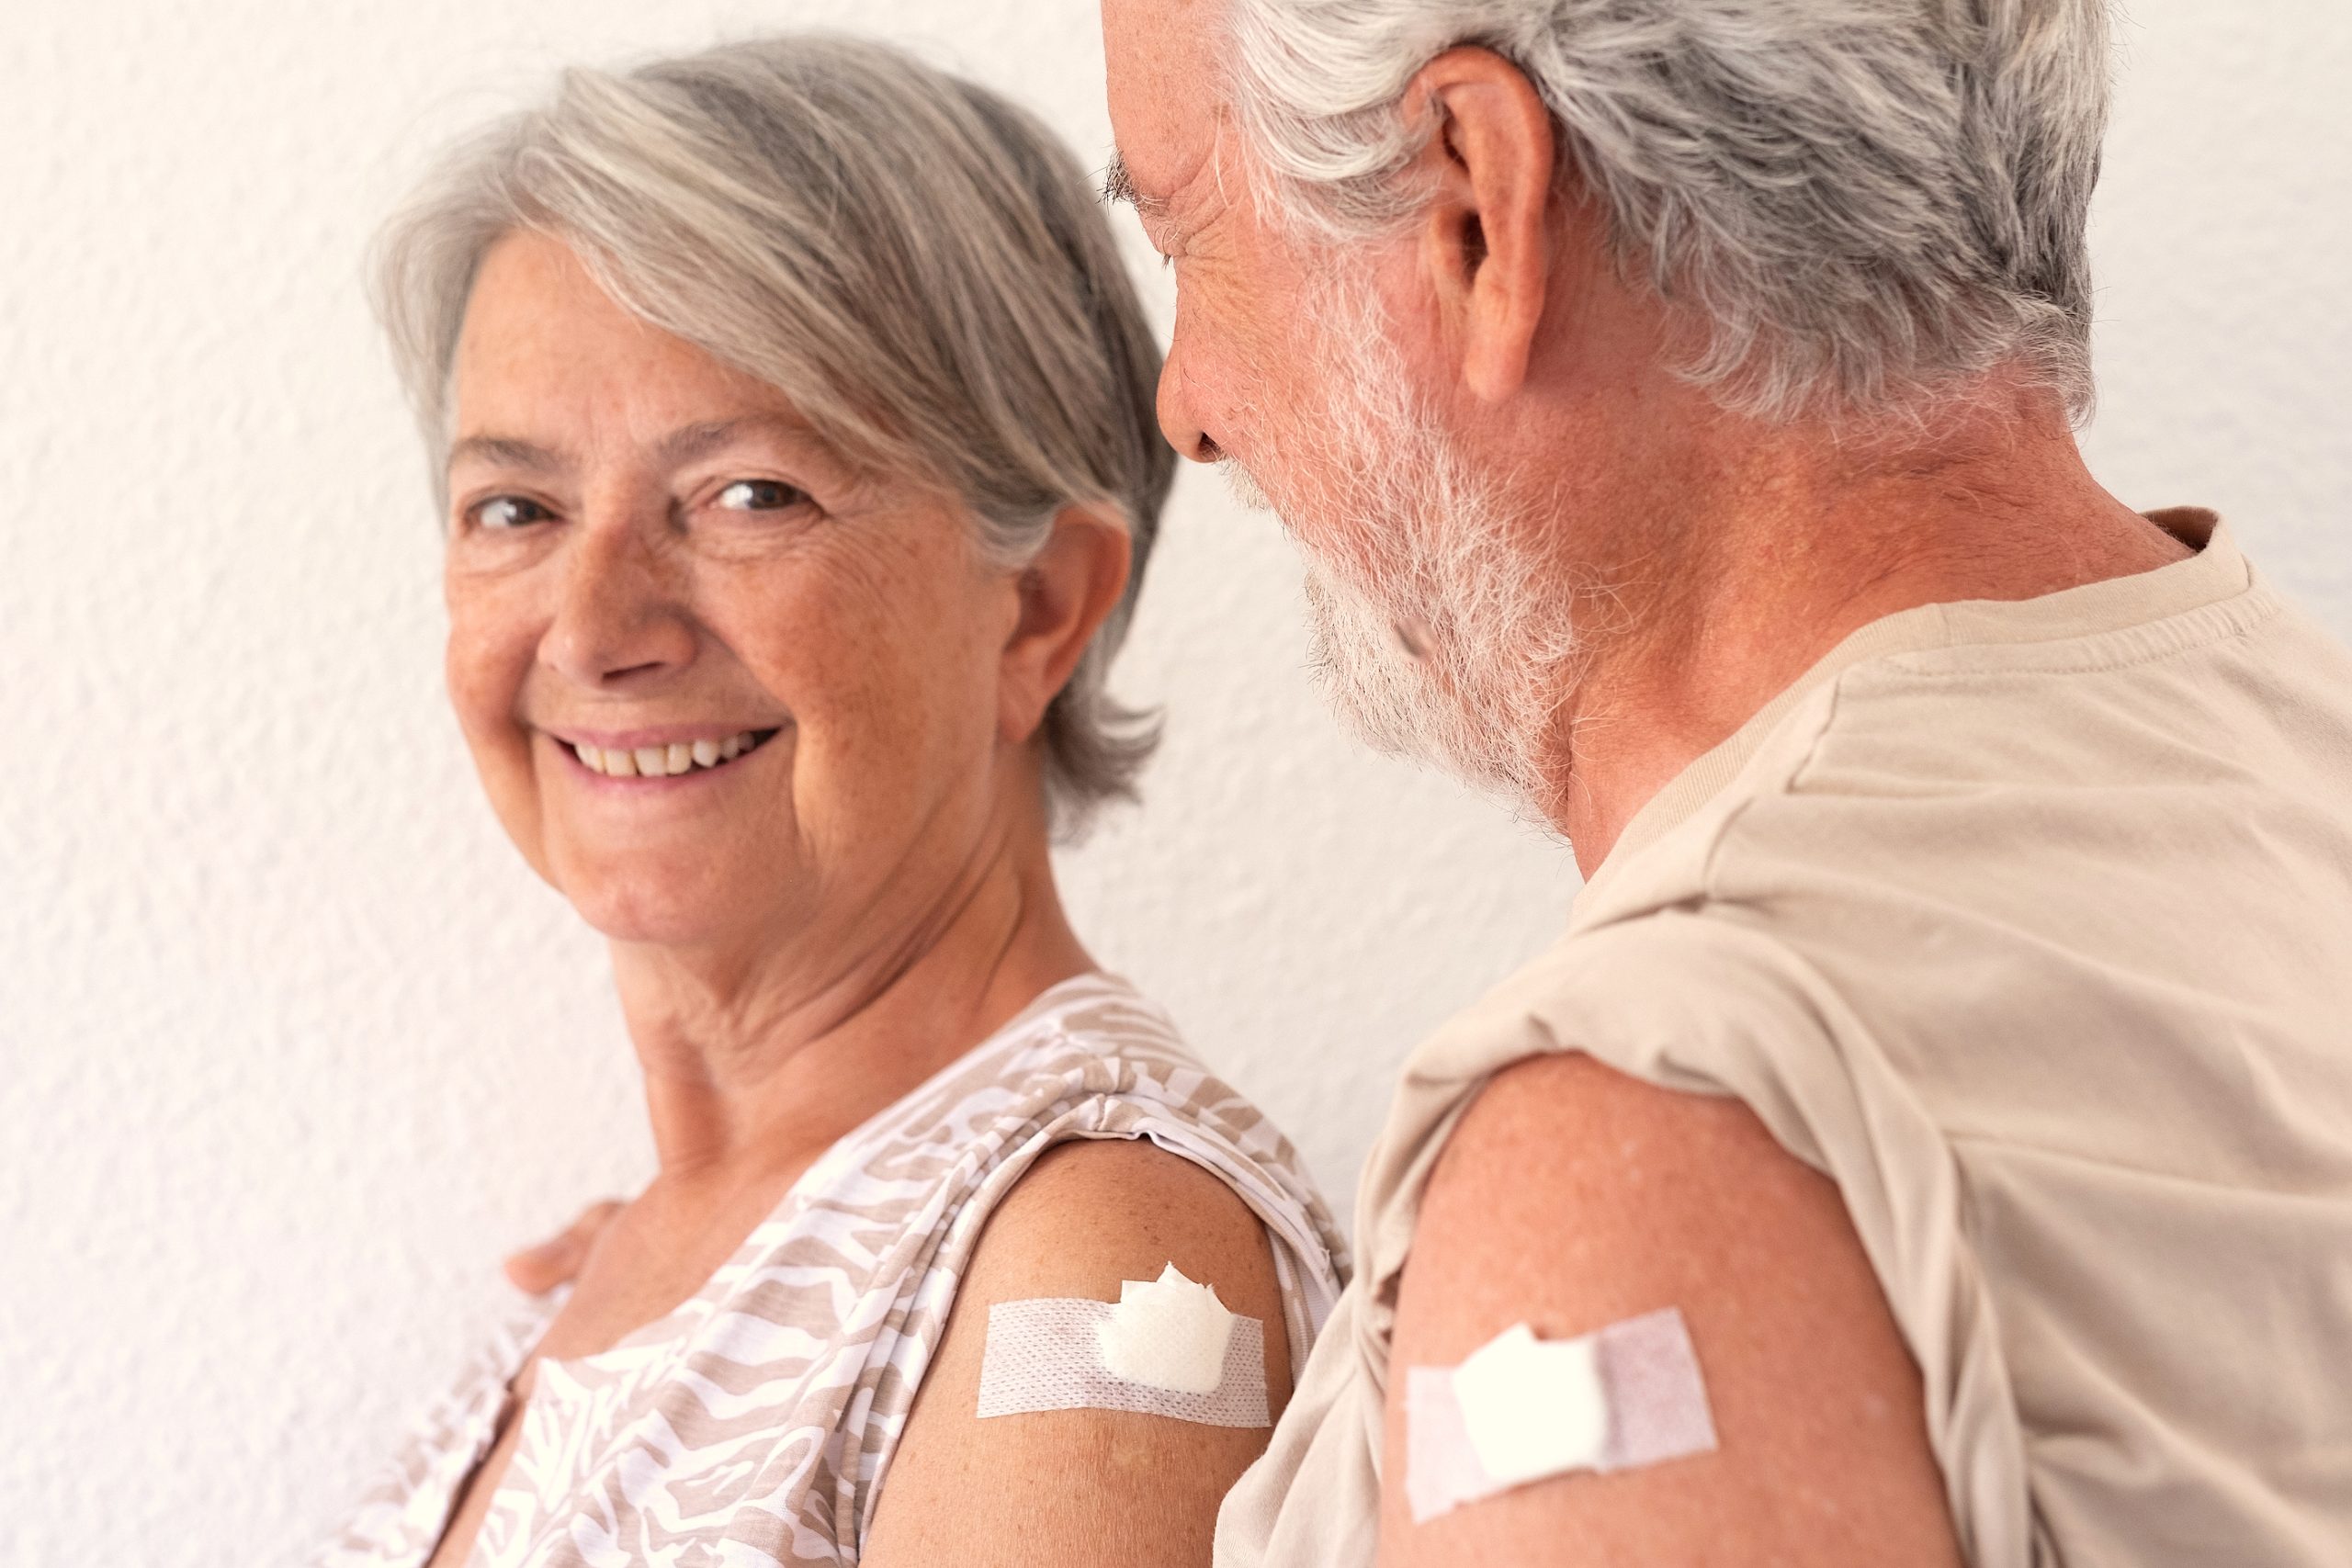 Aprobada vacuna VRS para mayores de 60